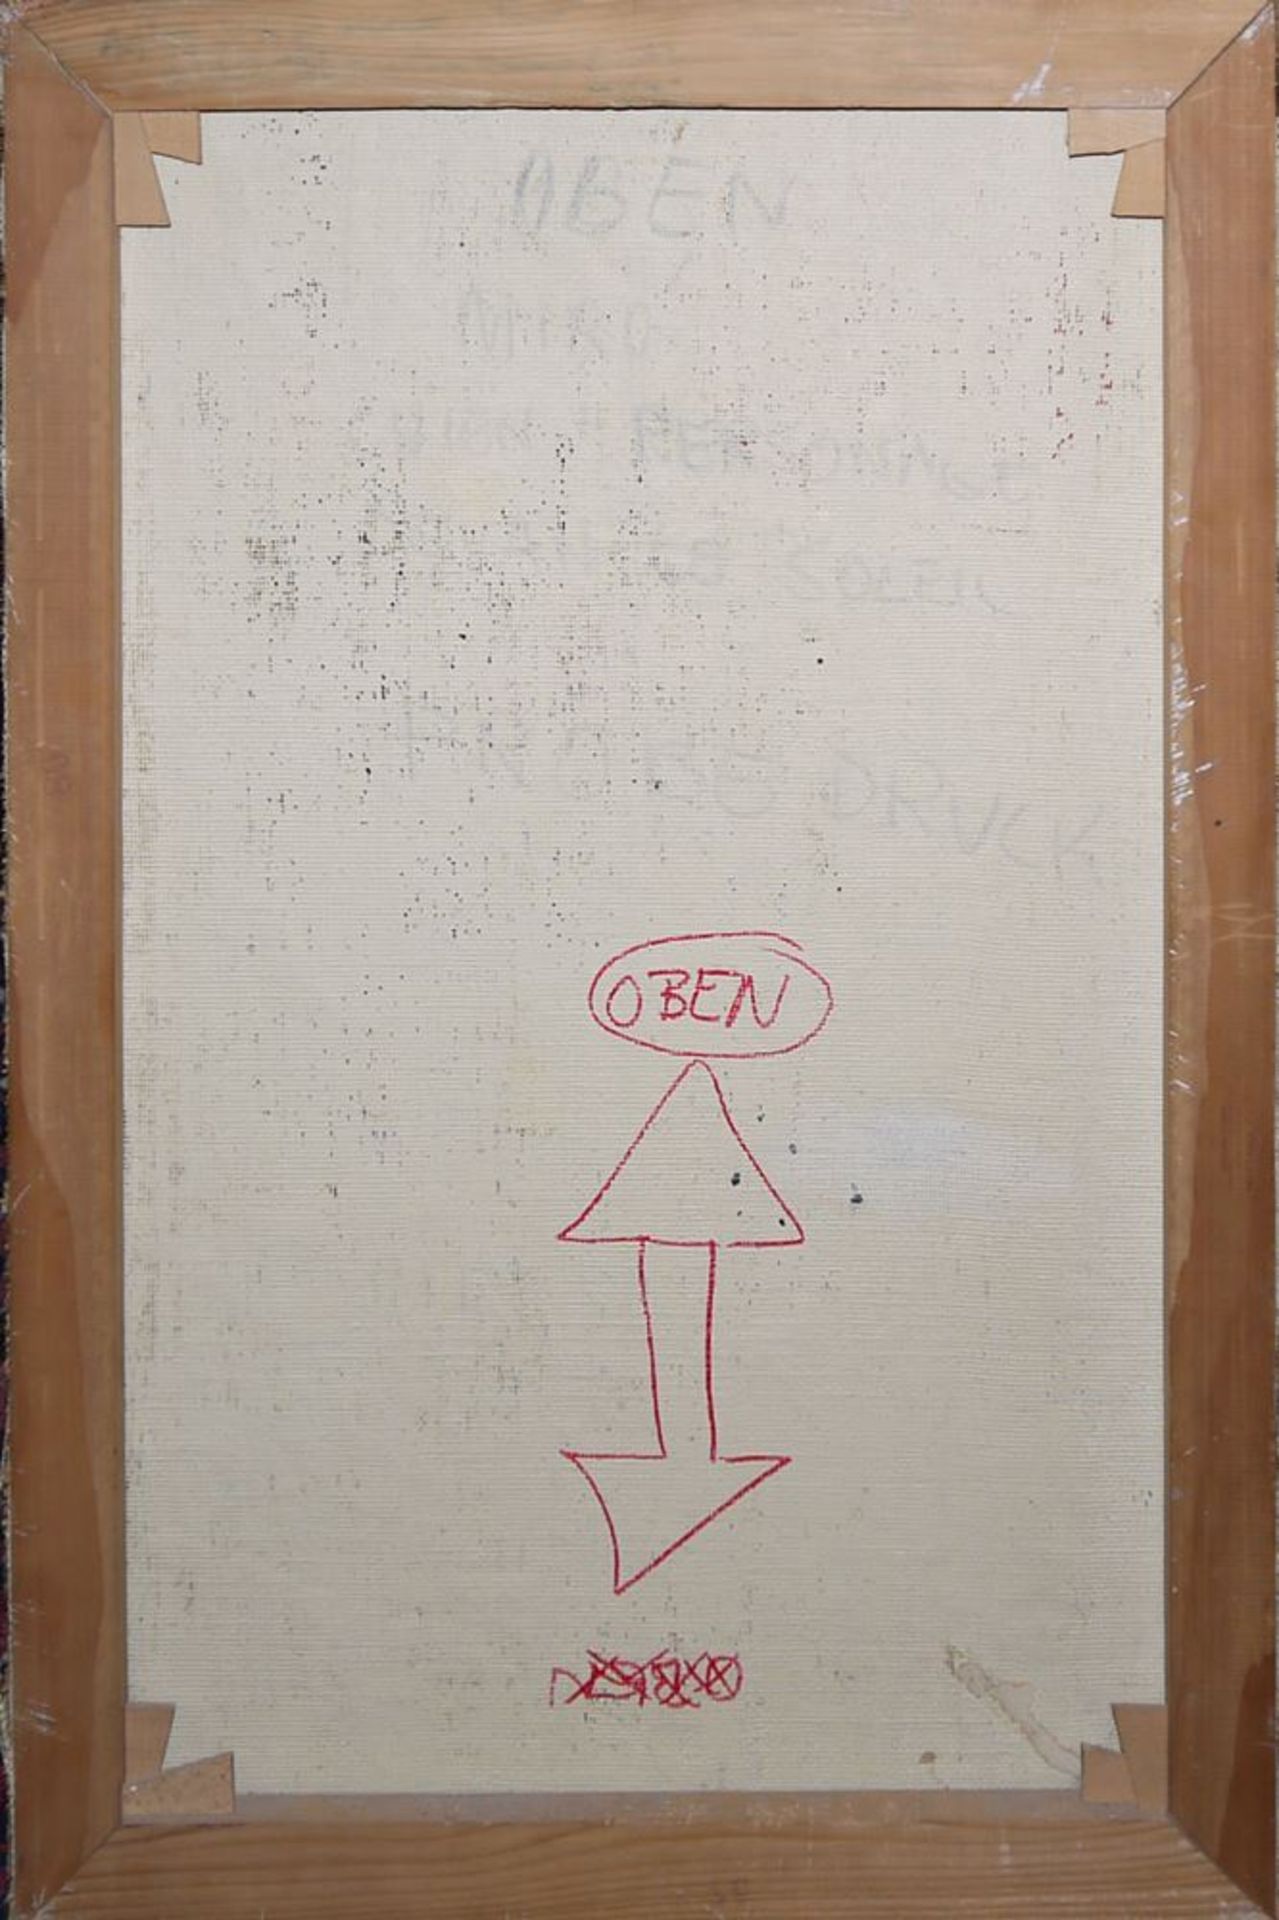 Joan Miro, qualitätvolle Kopie nach "Figures and dog in front of the sun" von 1 - Bild 2 aus 2